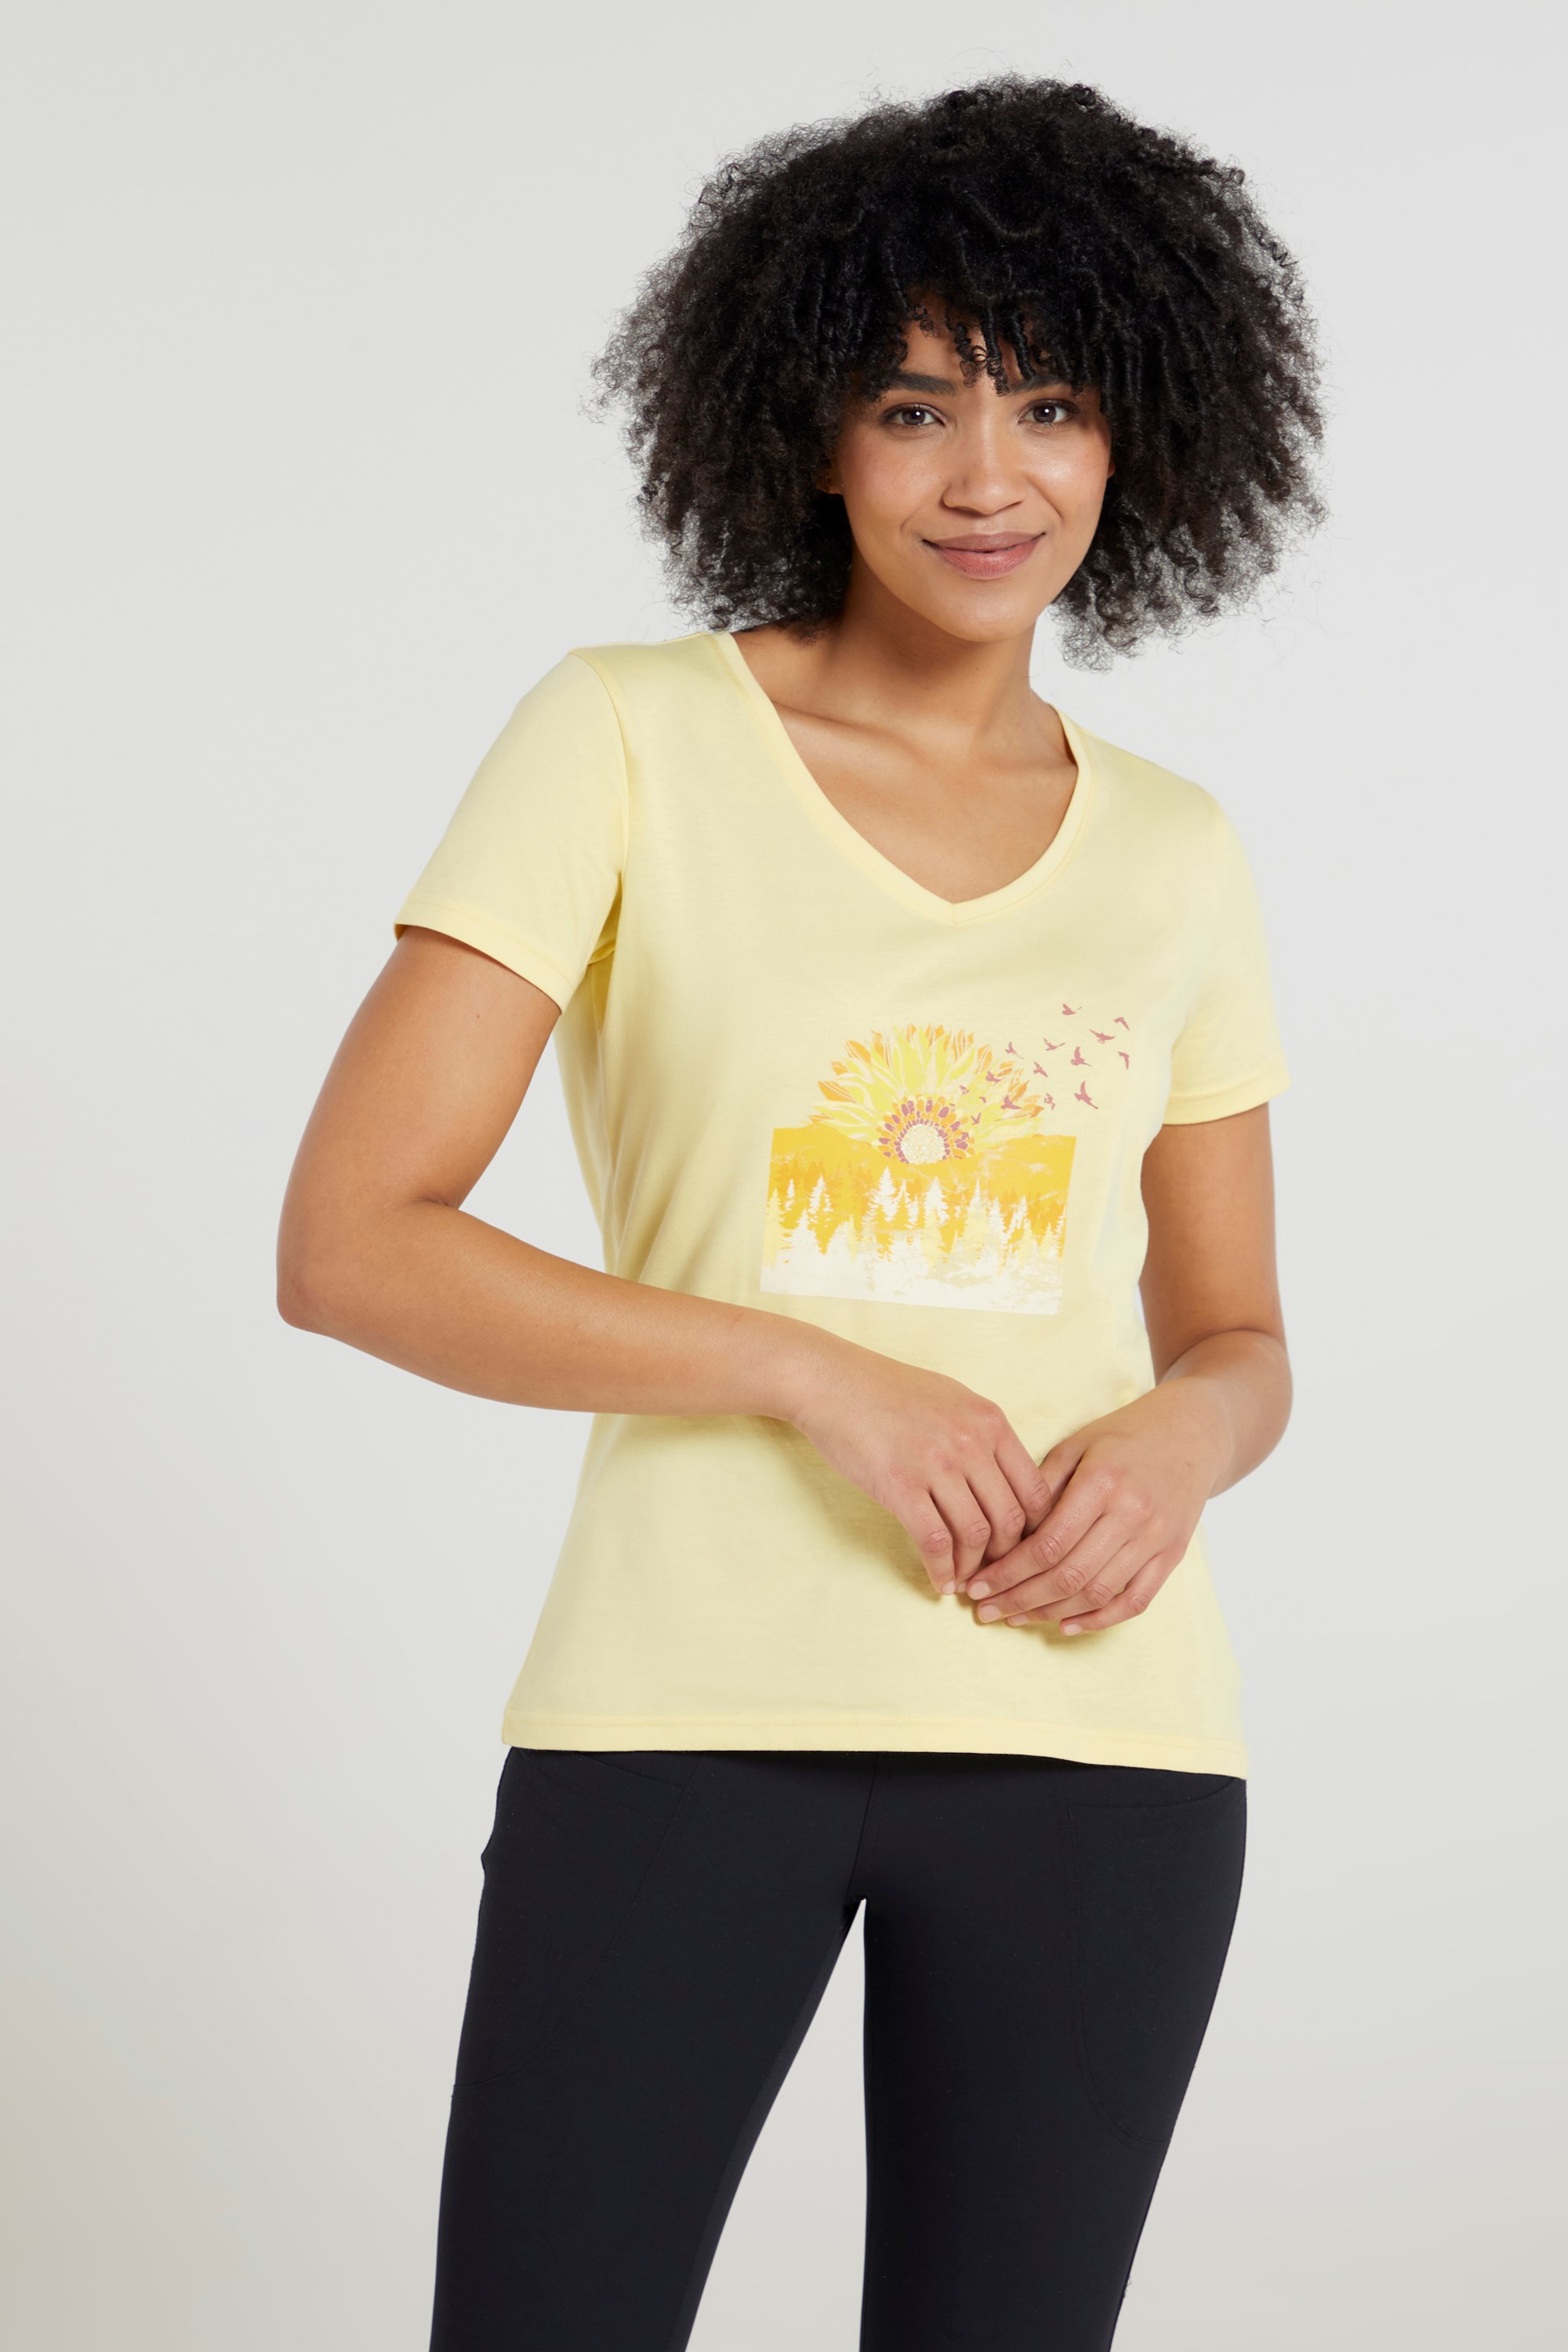 Sunflower Womens Printed T-Shirt